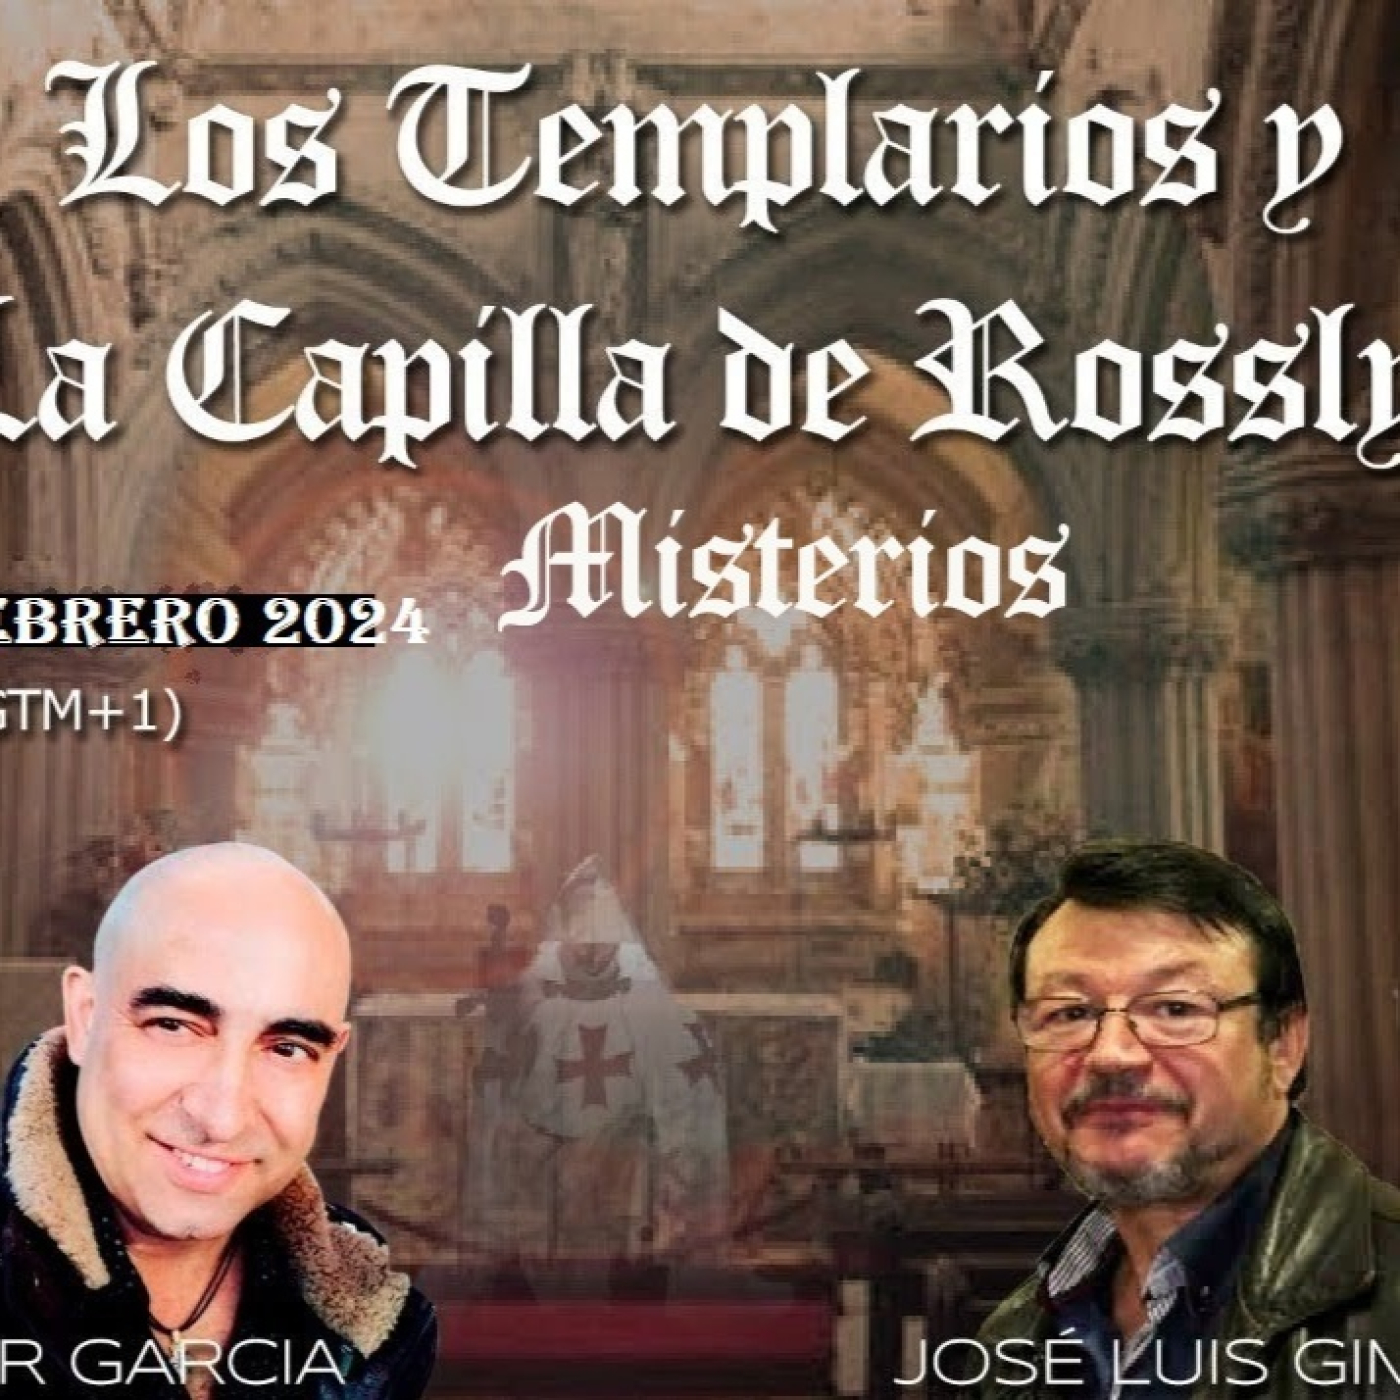 ✔️ LOS TEMPLARIOS Y LA CAPILLA DE ROSSLYN - Jose Luis Gimenez & Xavier Garcia